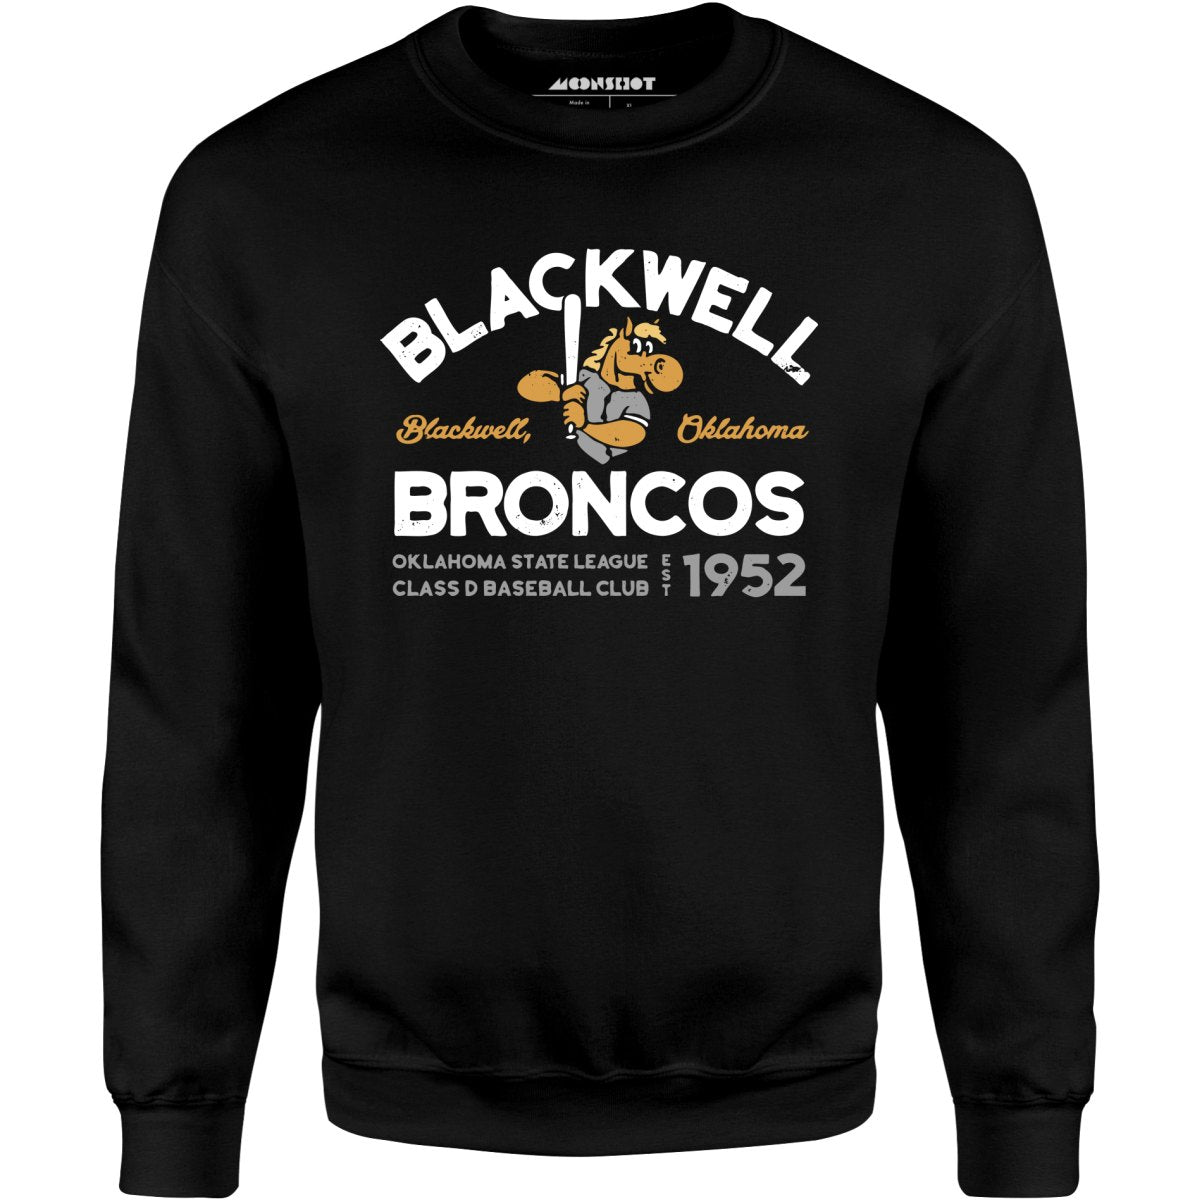 Blackwell Broncos - Oklahoma - Vintage Defunct Baseball Teams - Unisex Sweatshirt